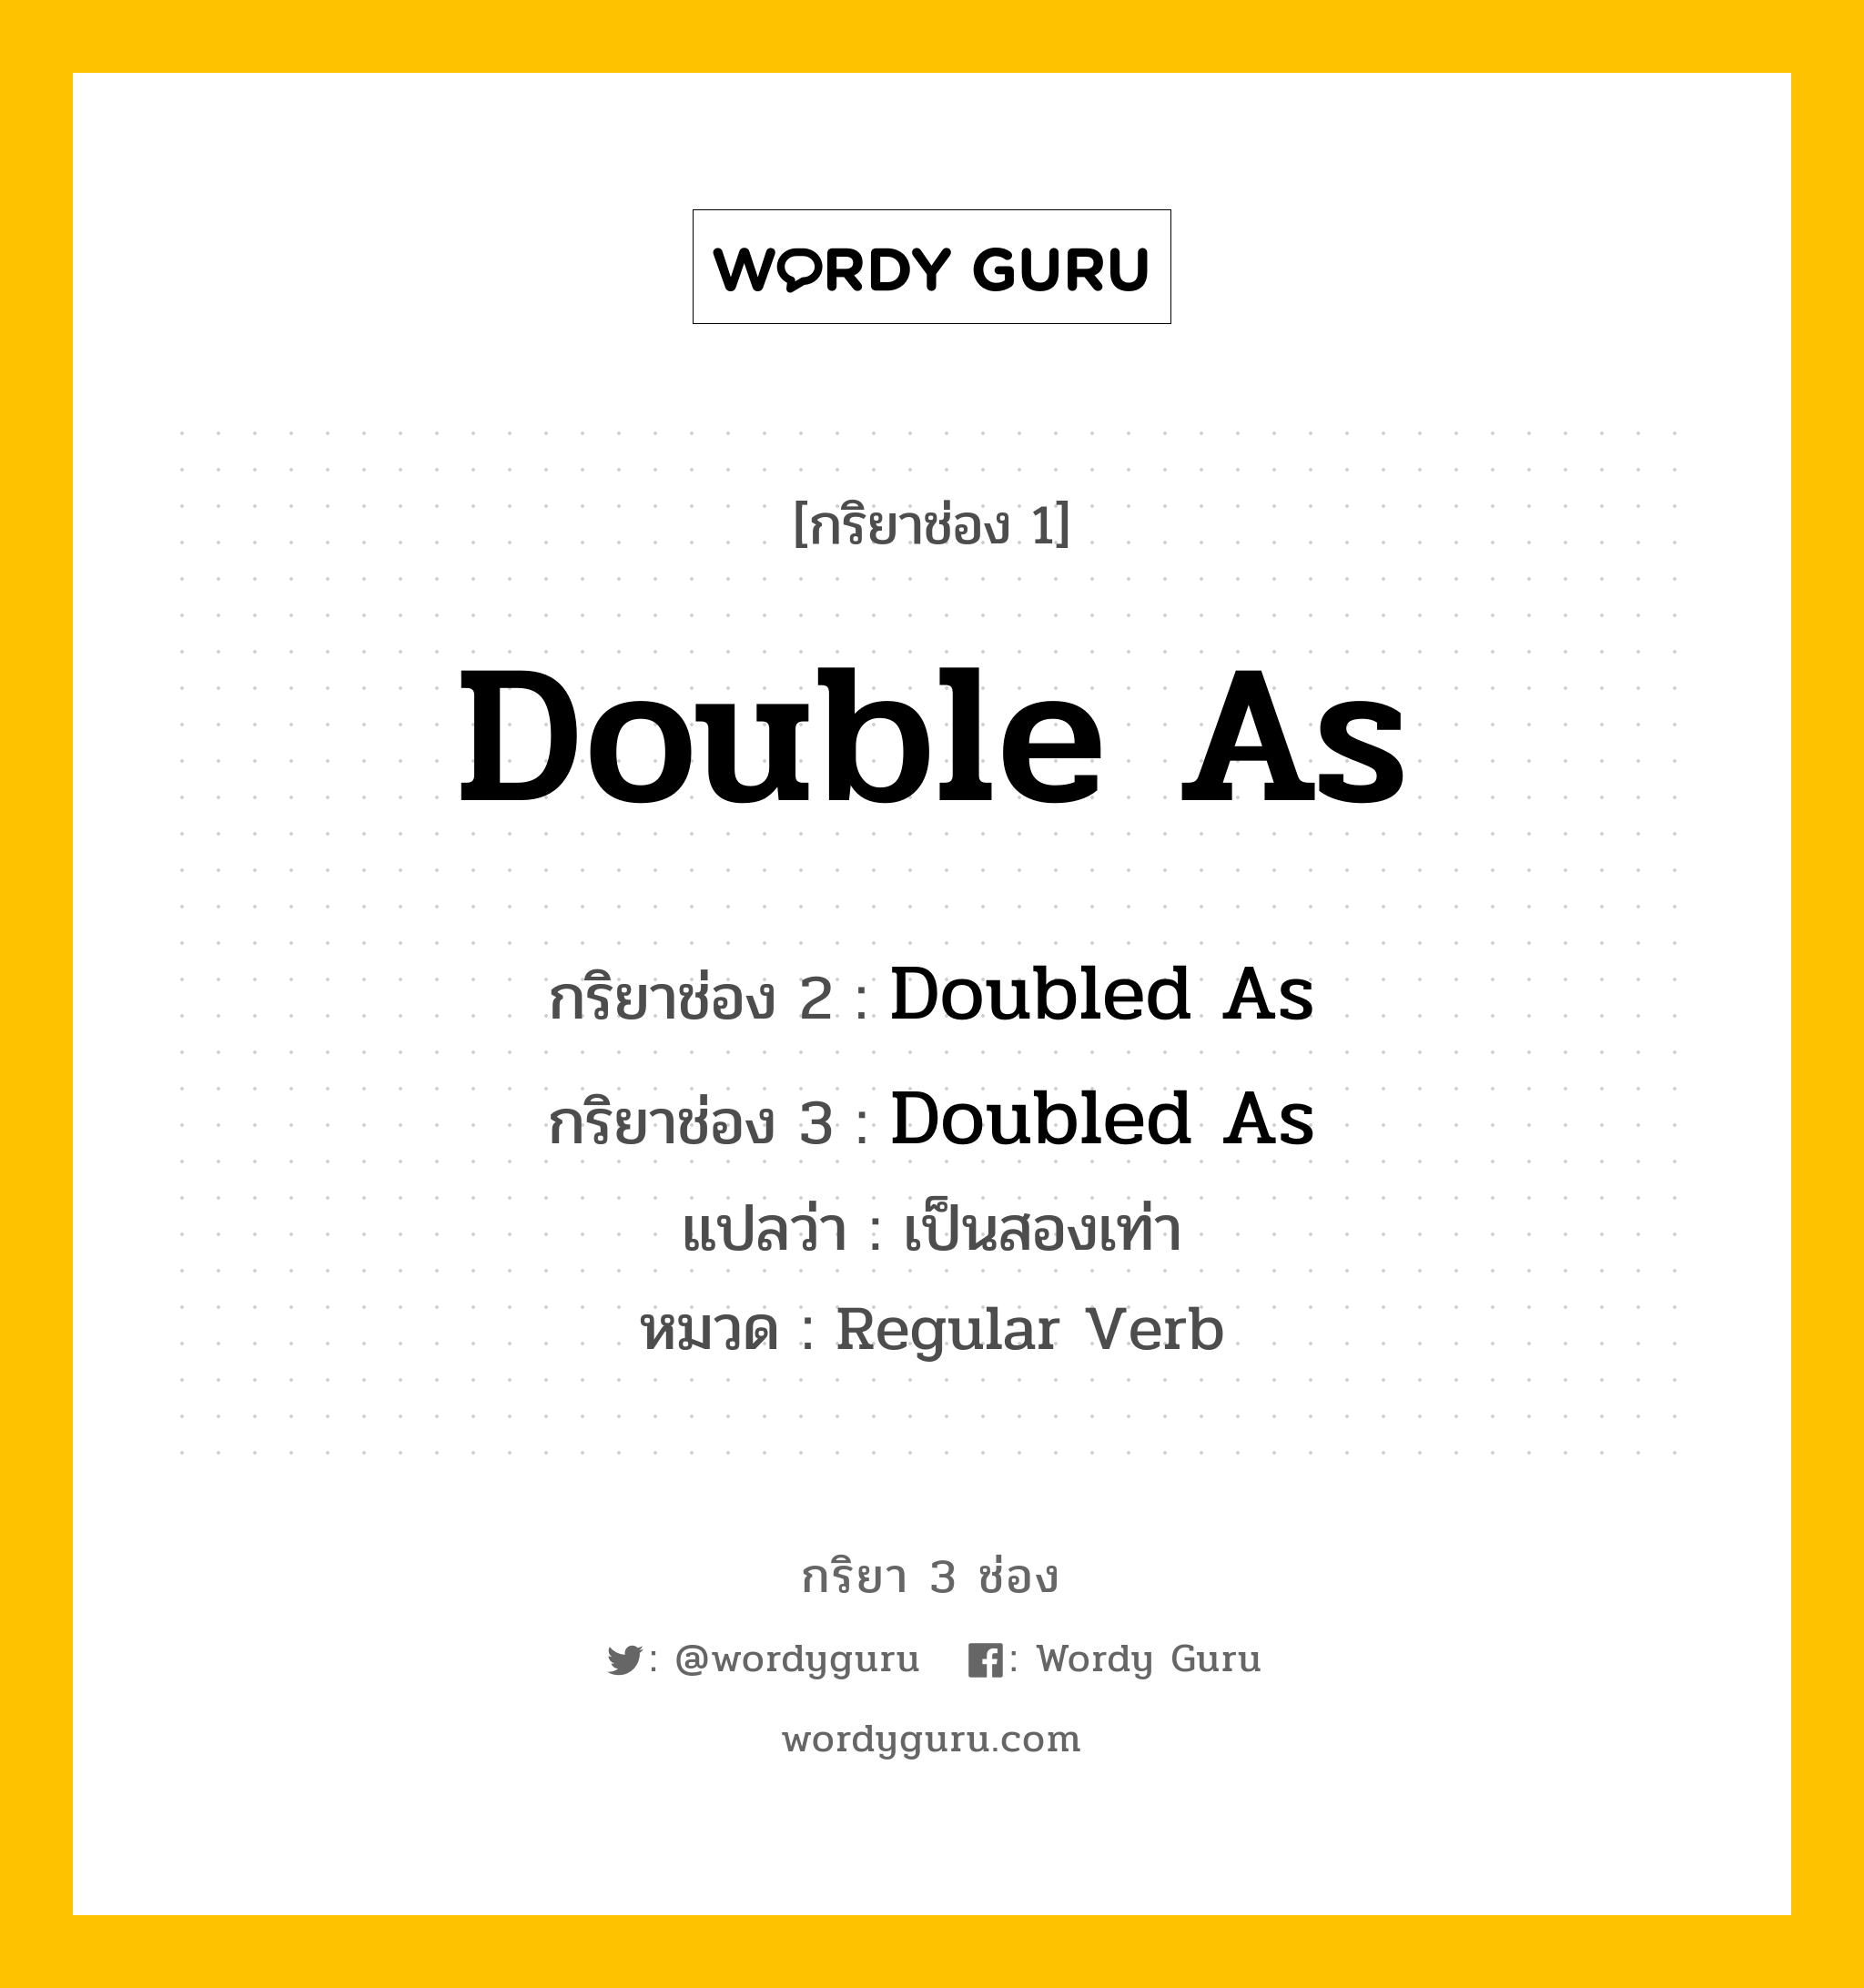 กริยา 3 ช่อง ของ Double As คืออะไร? มาดูคำอ่าน คำแปลกันเลย, กริยาช่อง 1 Double As กริยาช่อง 2 Doubled As กริยาช่อง 3 Doubled As แปลว่า เป็นสองเท่า หมวด Regular Verb หมวด Regular Verb